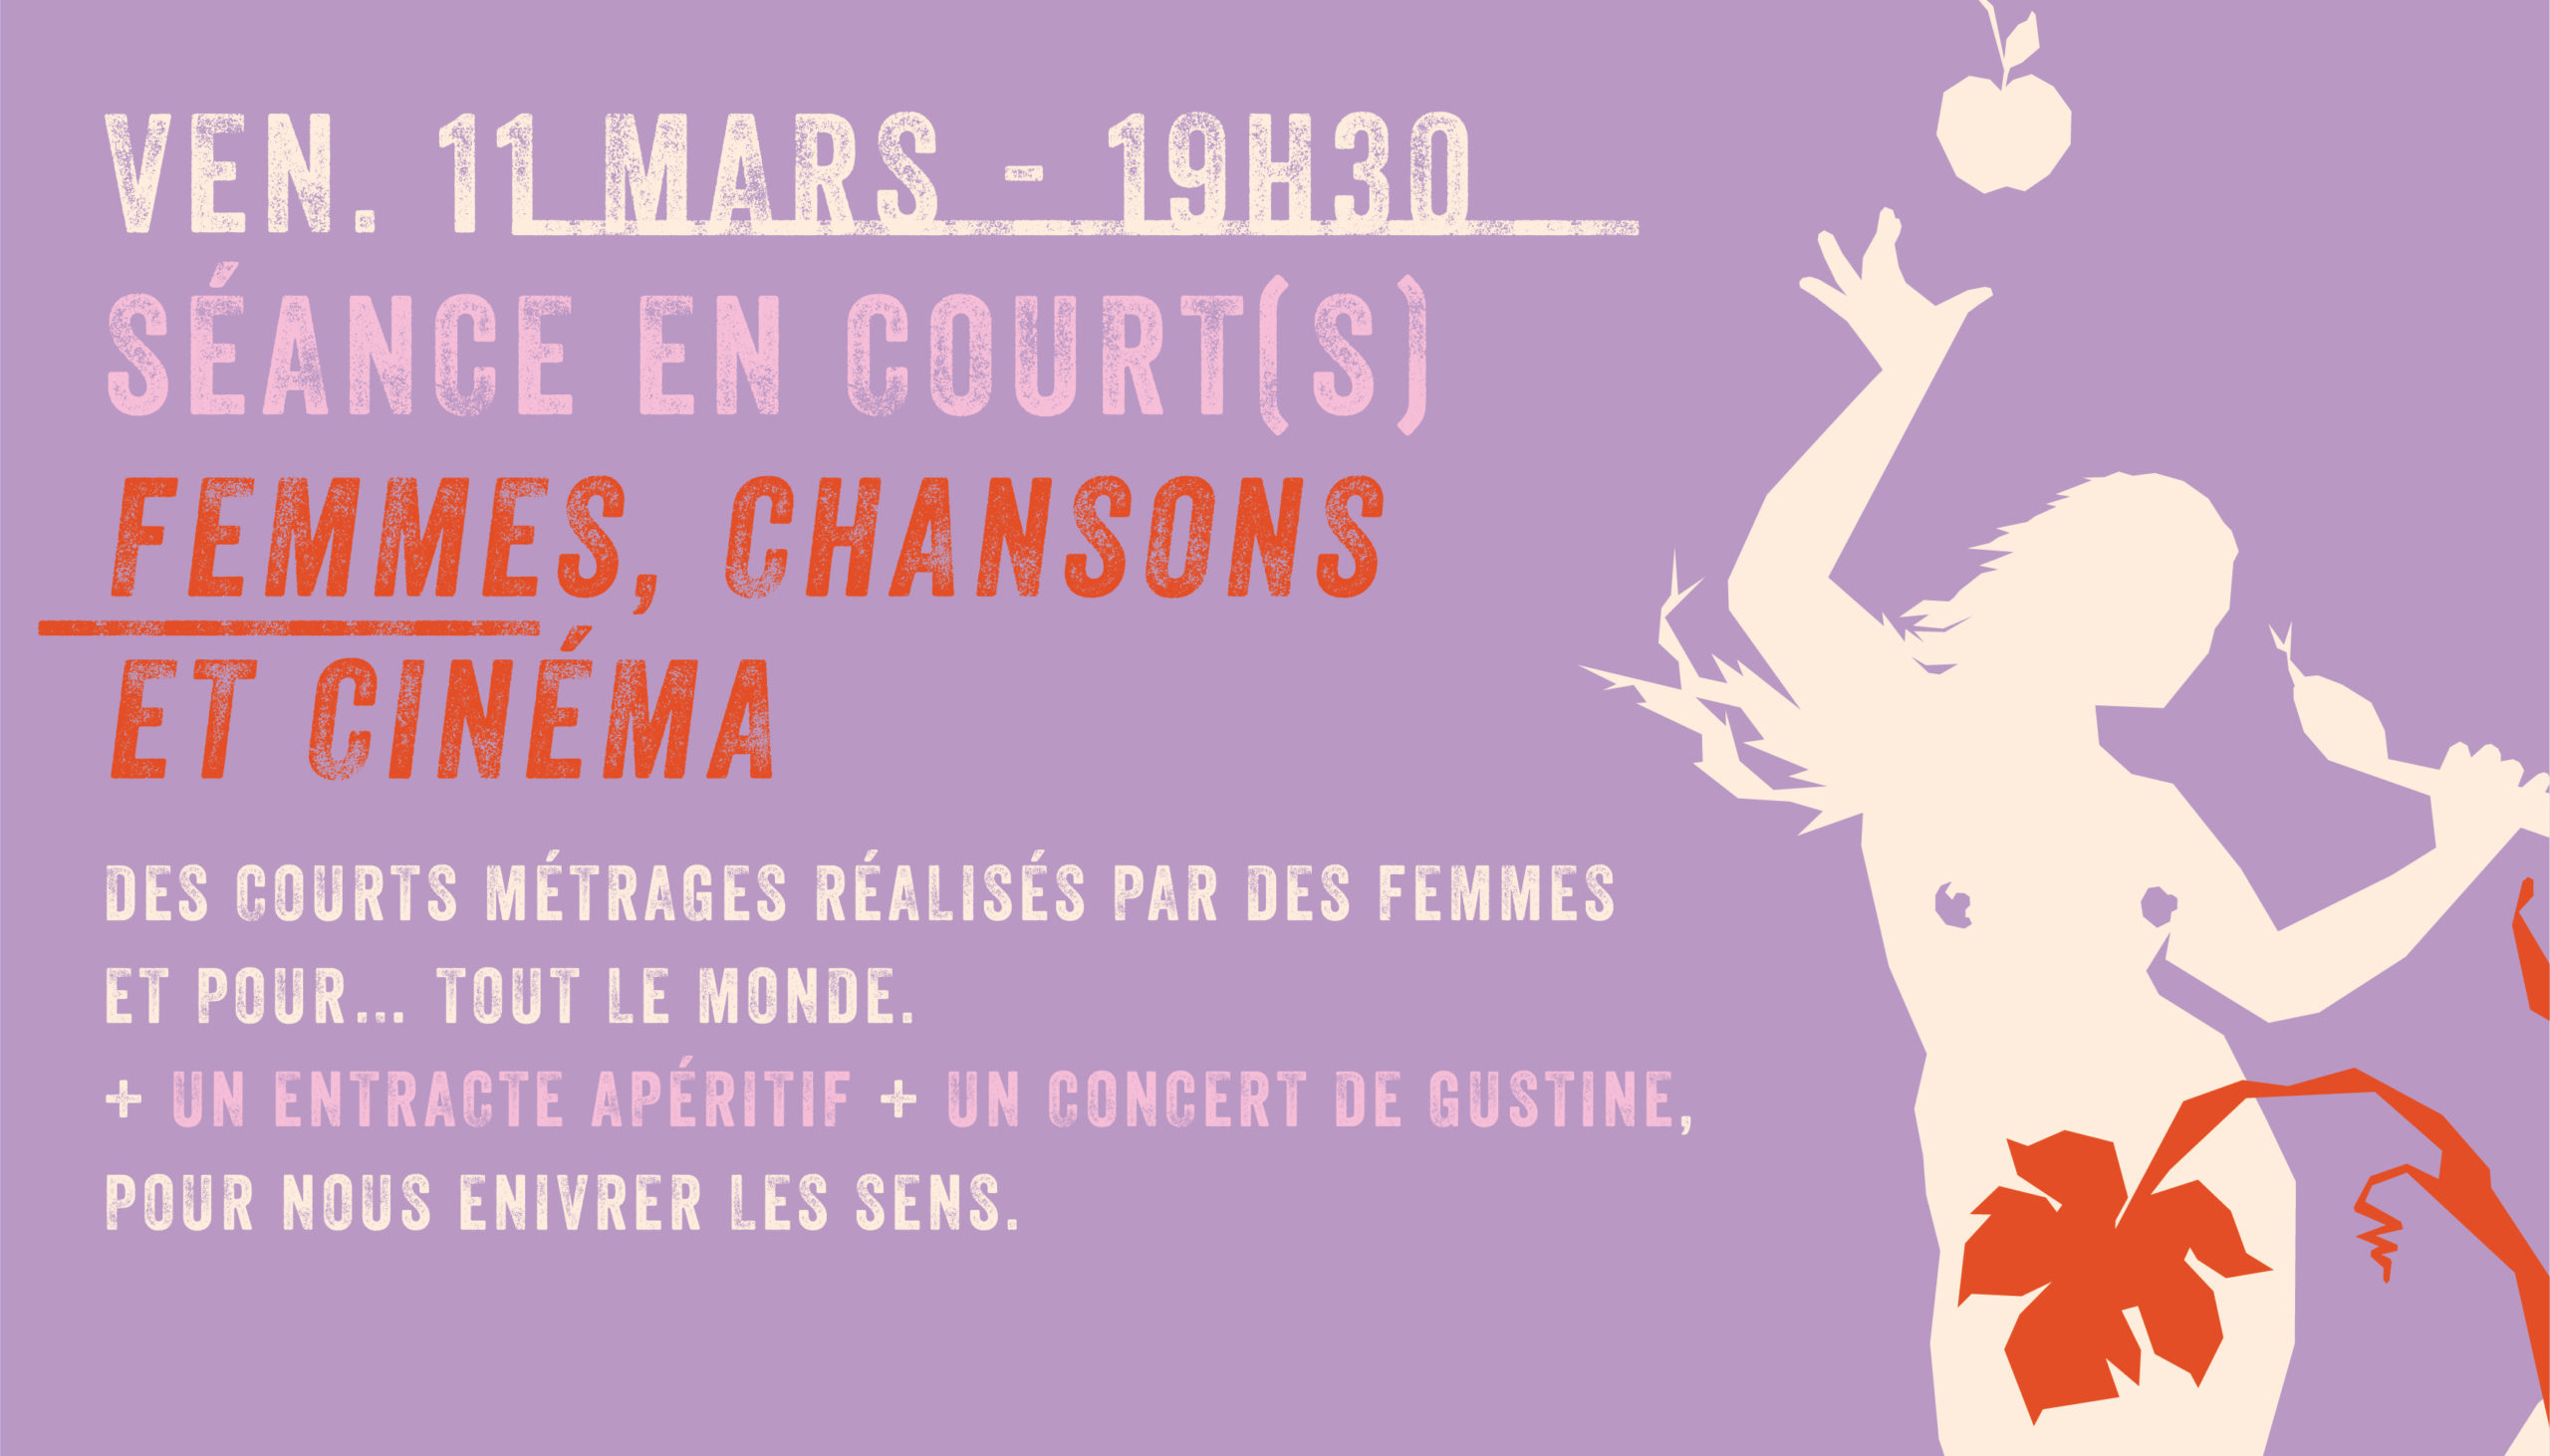 Séance en Court(s) > Femmes, Chansons et Cinéma